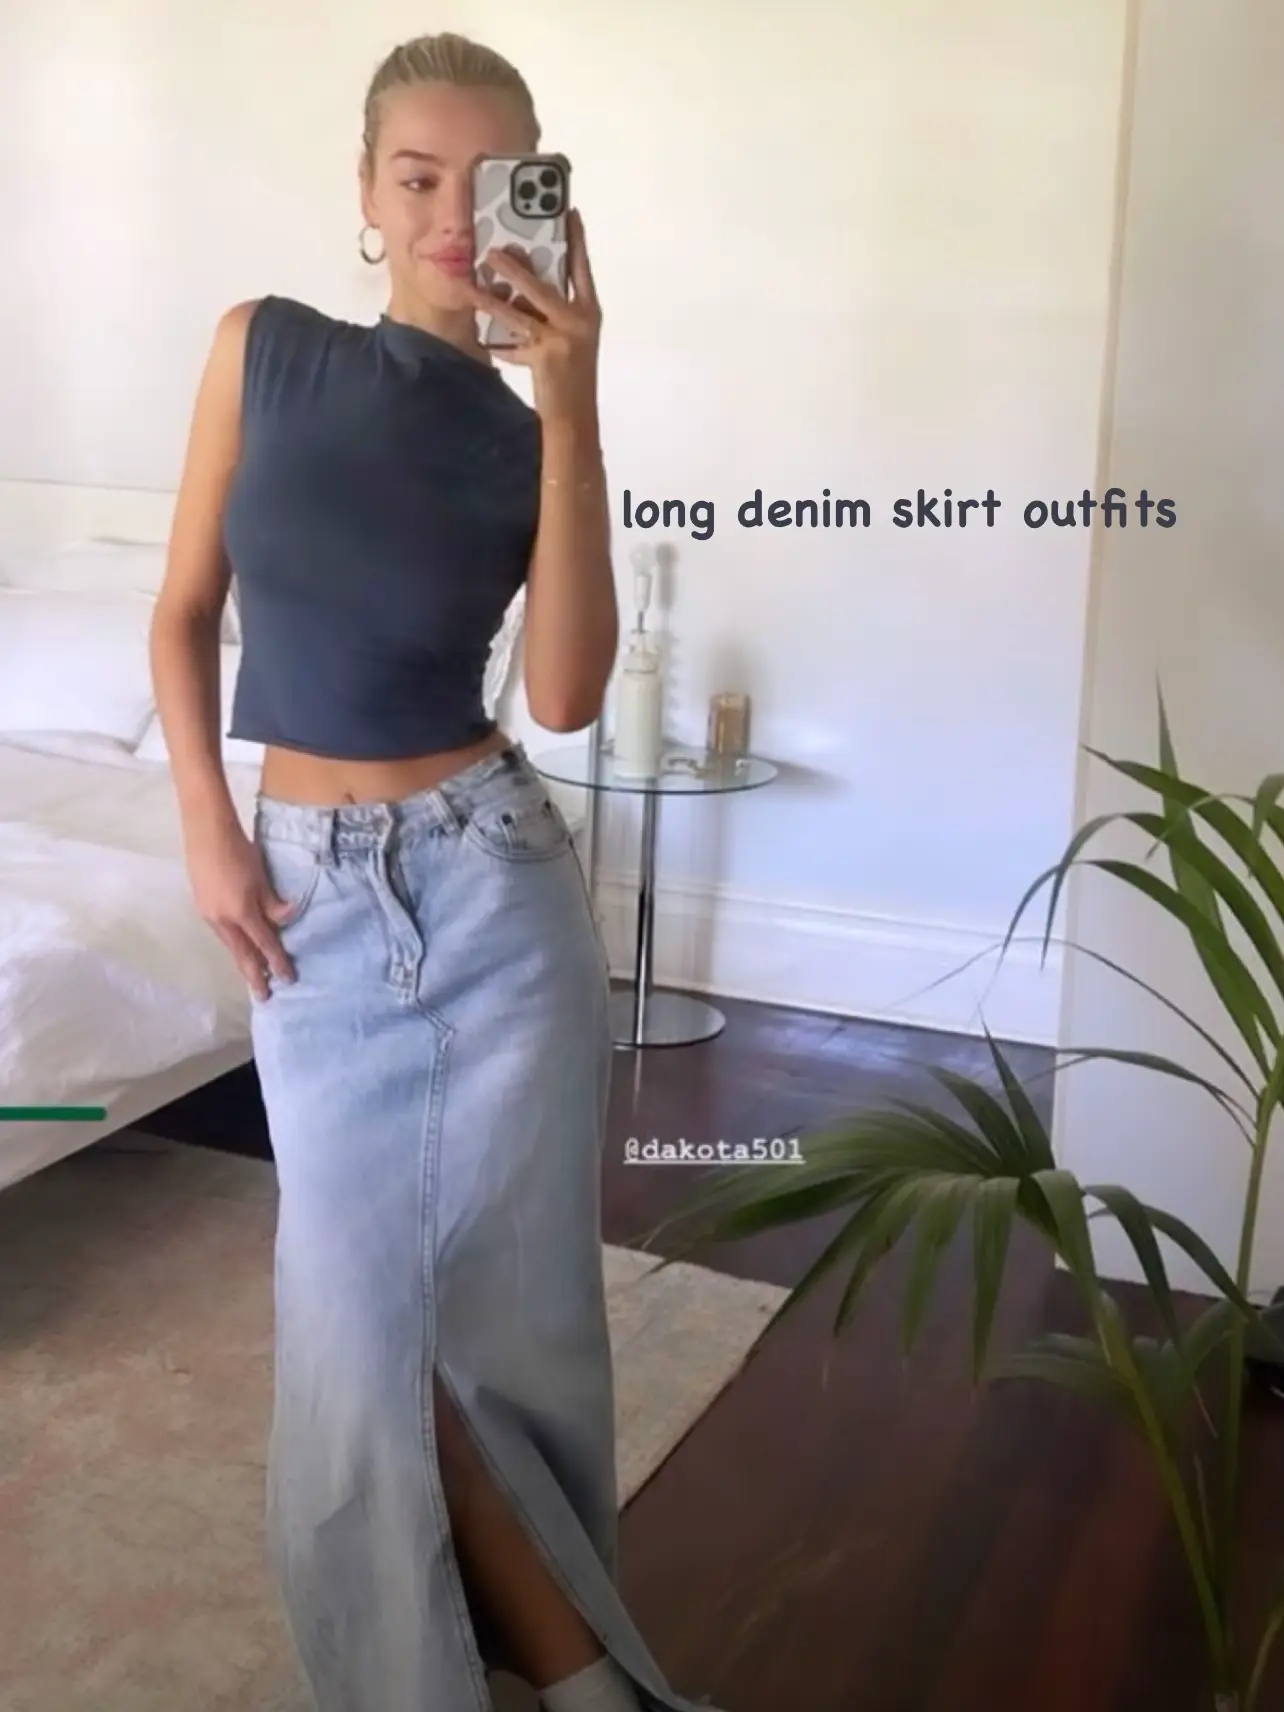  utcoco Women's Midi Jean Skirt High Waisted Slit Hem